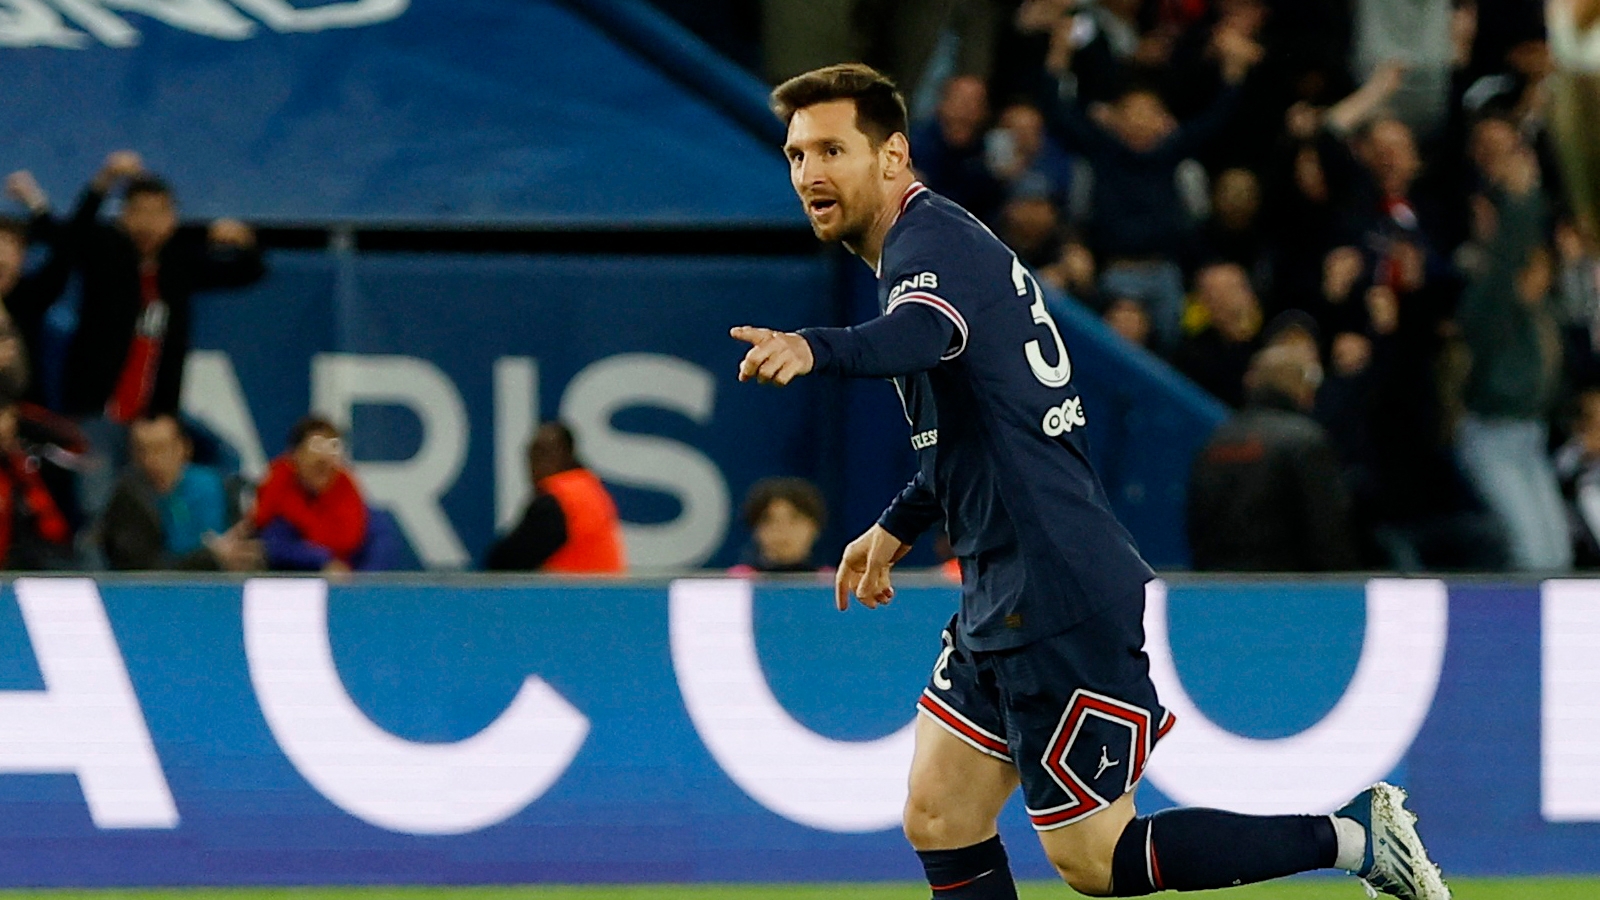 El balance del primer año de Messi en PSG: el compañero “amable a sus ojos”, cómo tomó los silbidos en su contra y su revancha